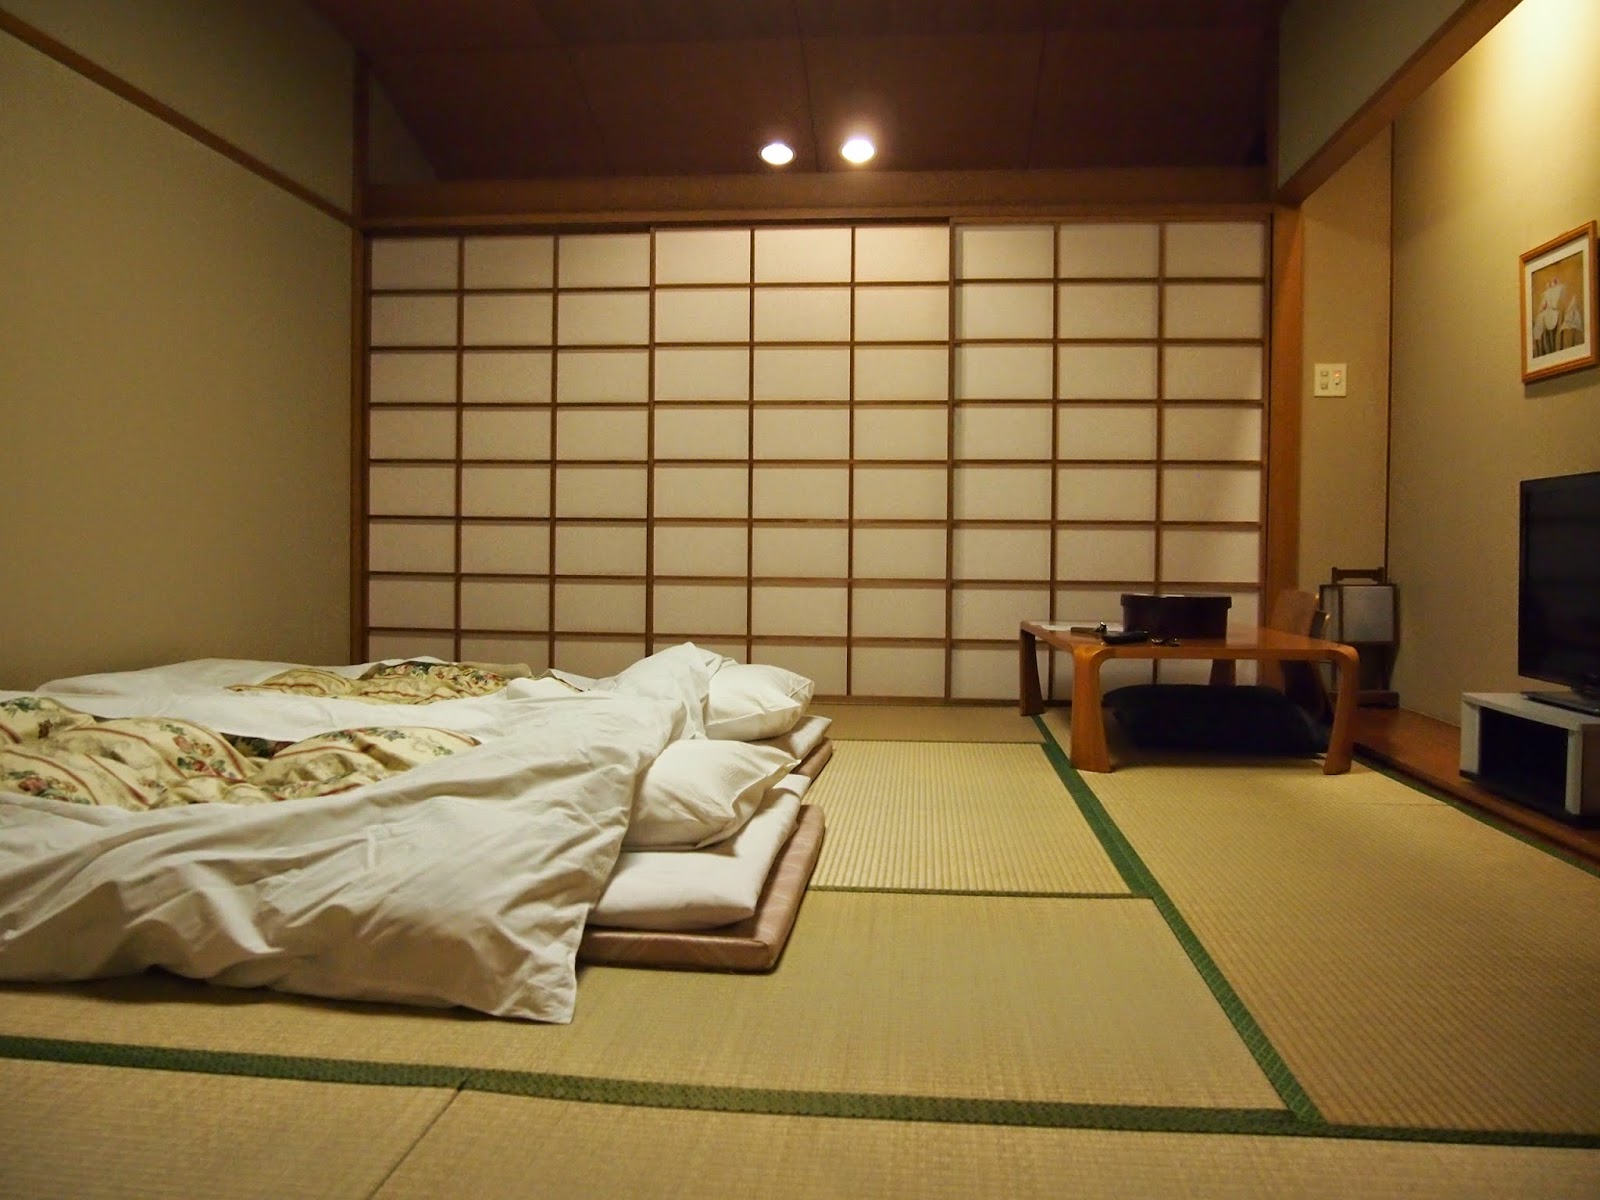 спальня в японском стиле фото интерьера